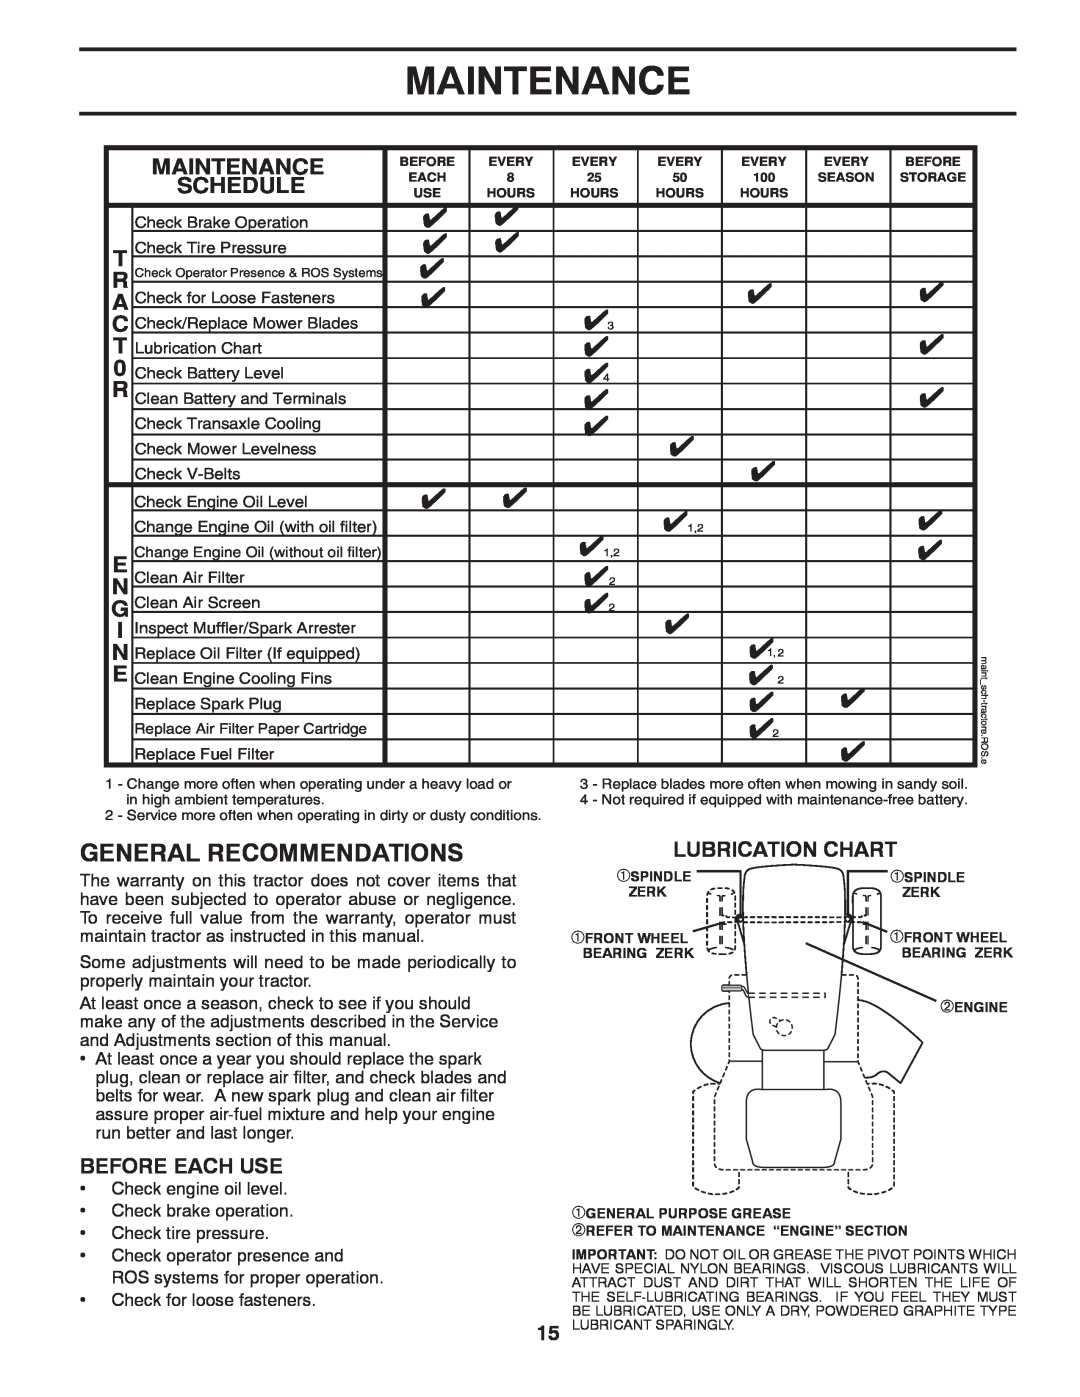 Poulan 419450 manual Maintenance, Lubrication Chart 